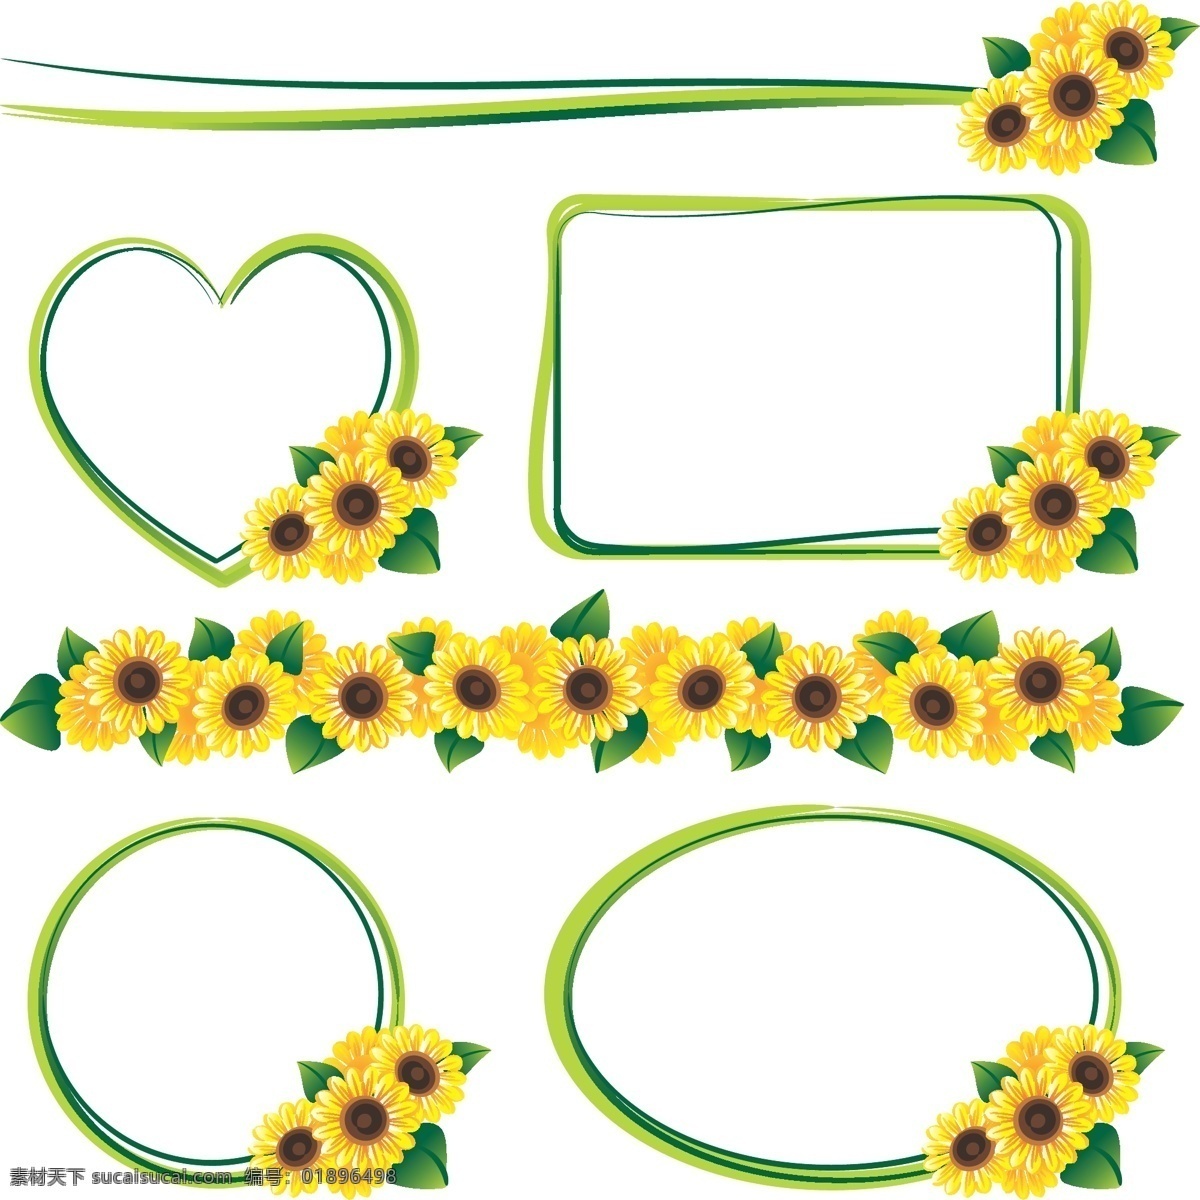 花卉 植物 边框 矢量 雏菊 方形 花朵 模板 设计稿 素材元素 叶子 心形 椭圆形 源文件 矢量图